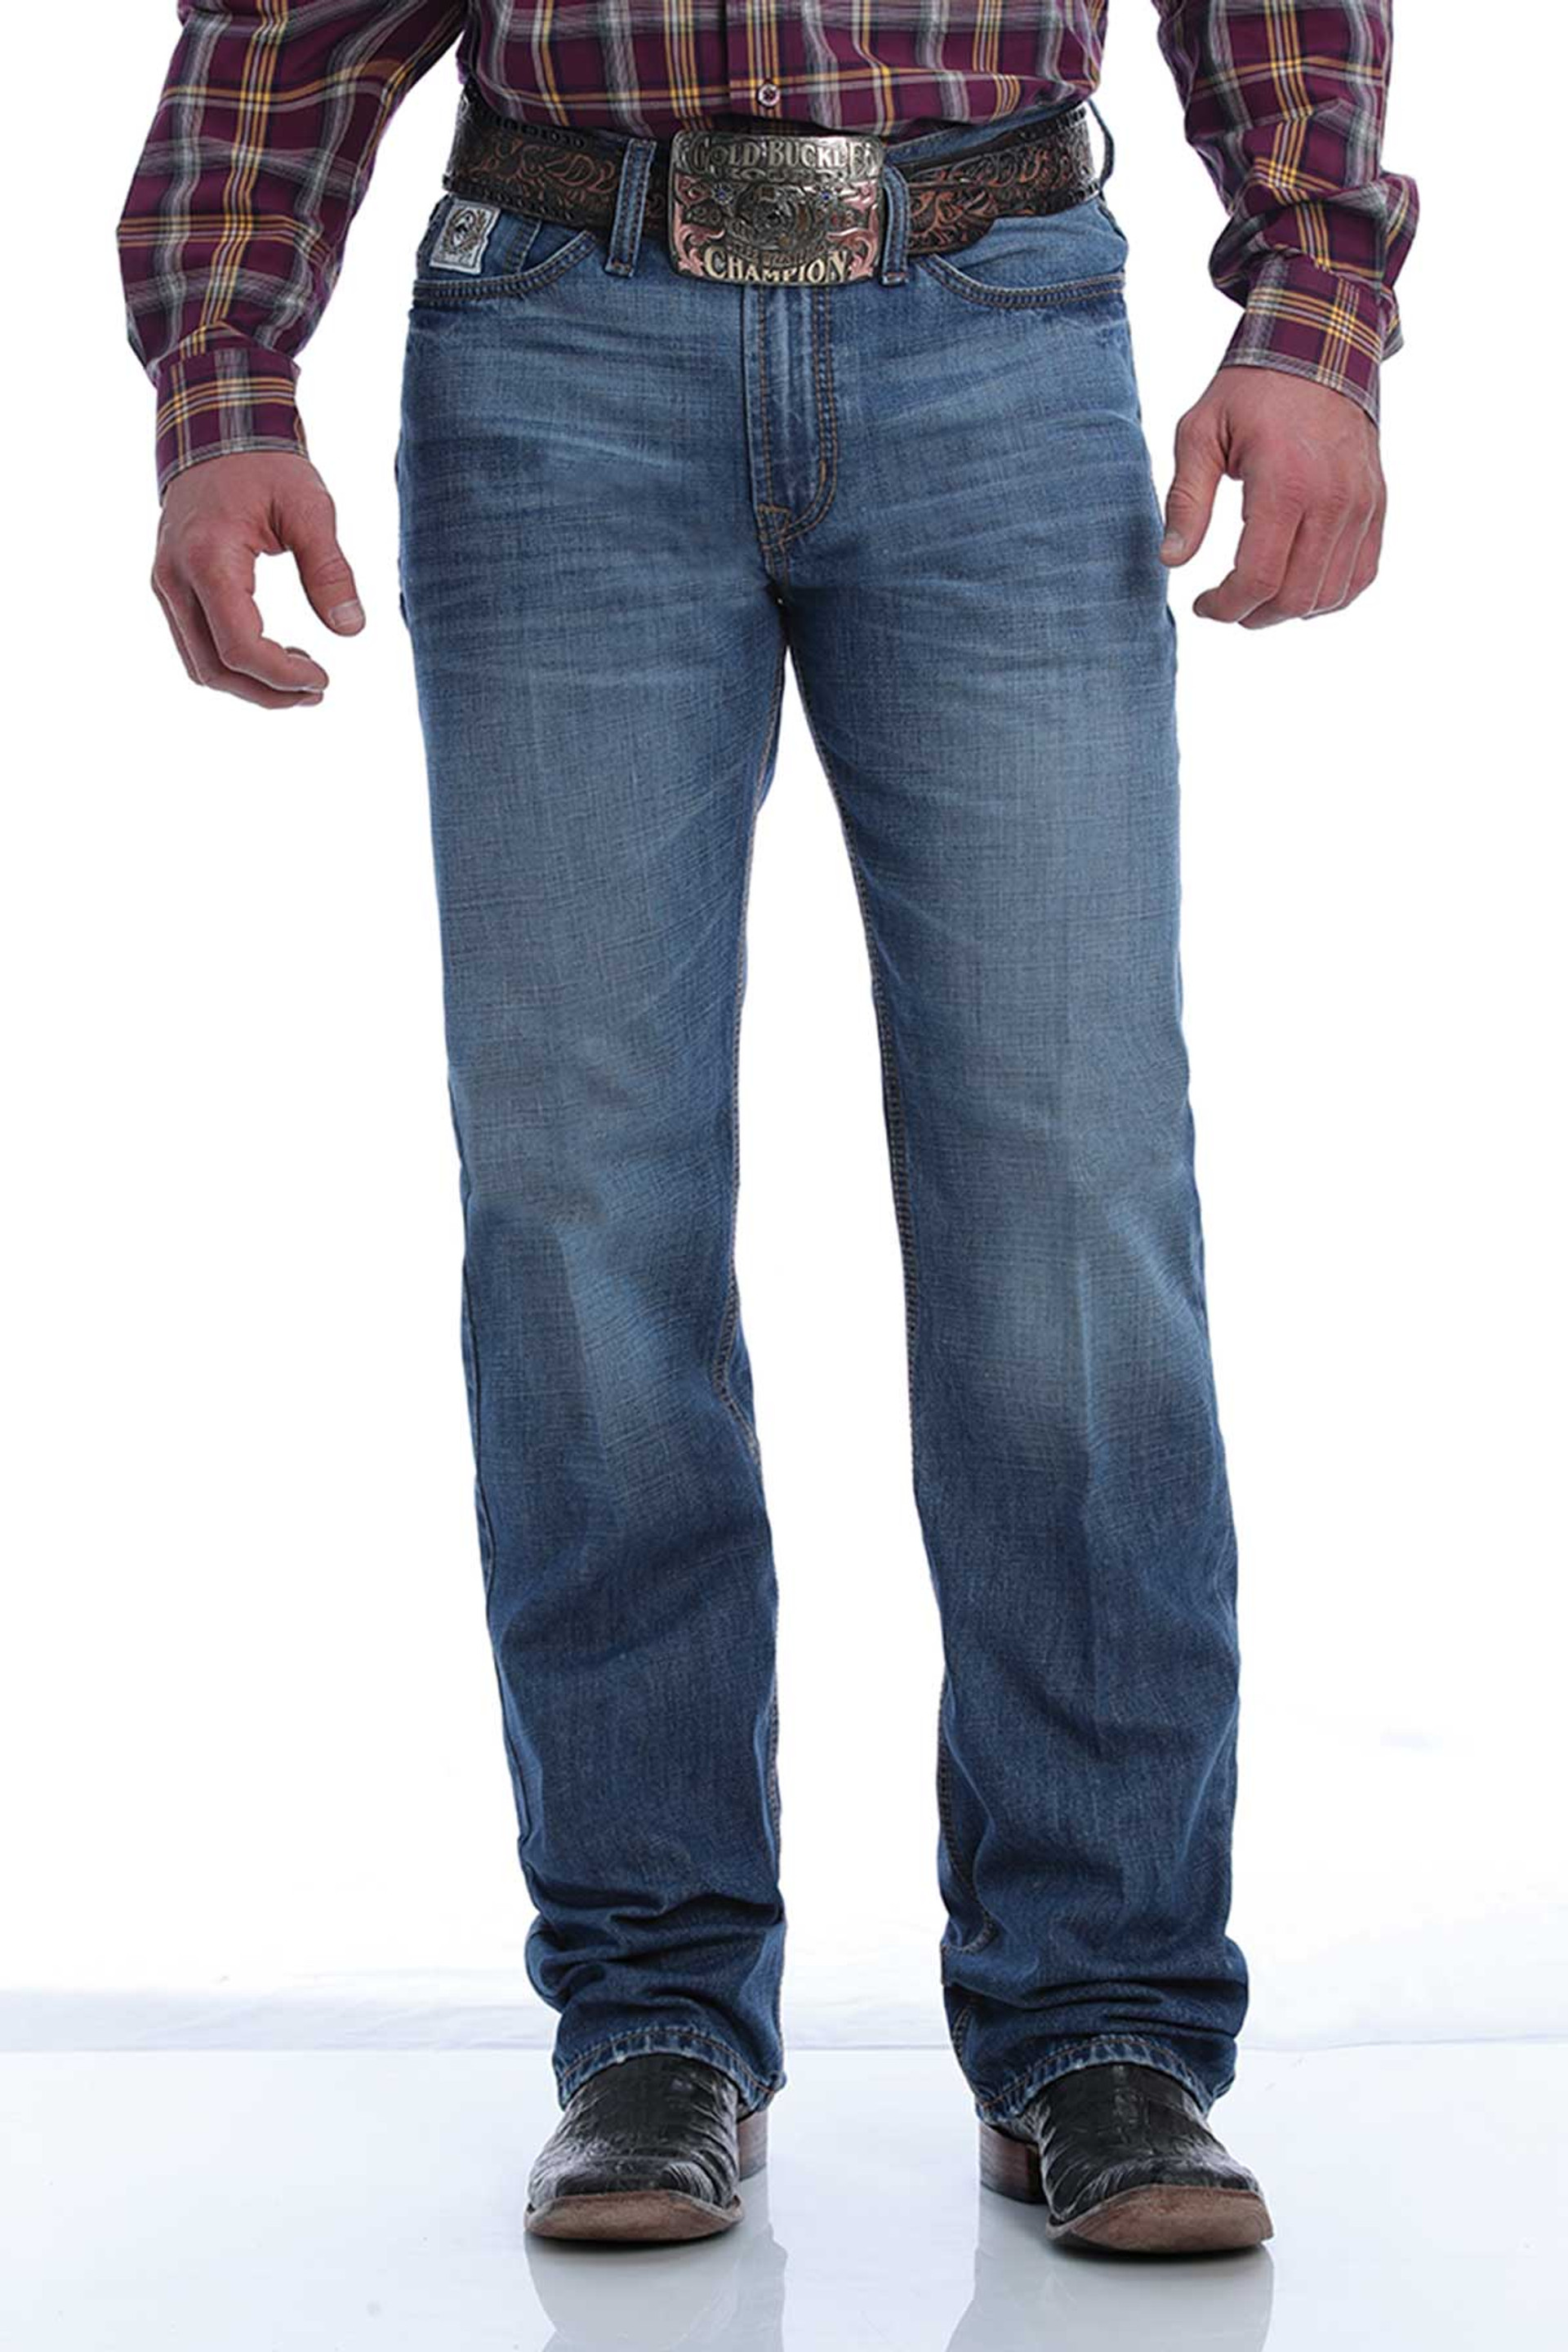 Men's Cinch Jeans, White Label, Medium Wash, Brown Stitch on Pocket ...